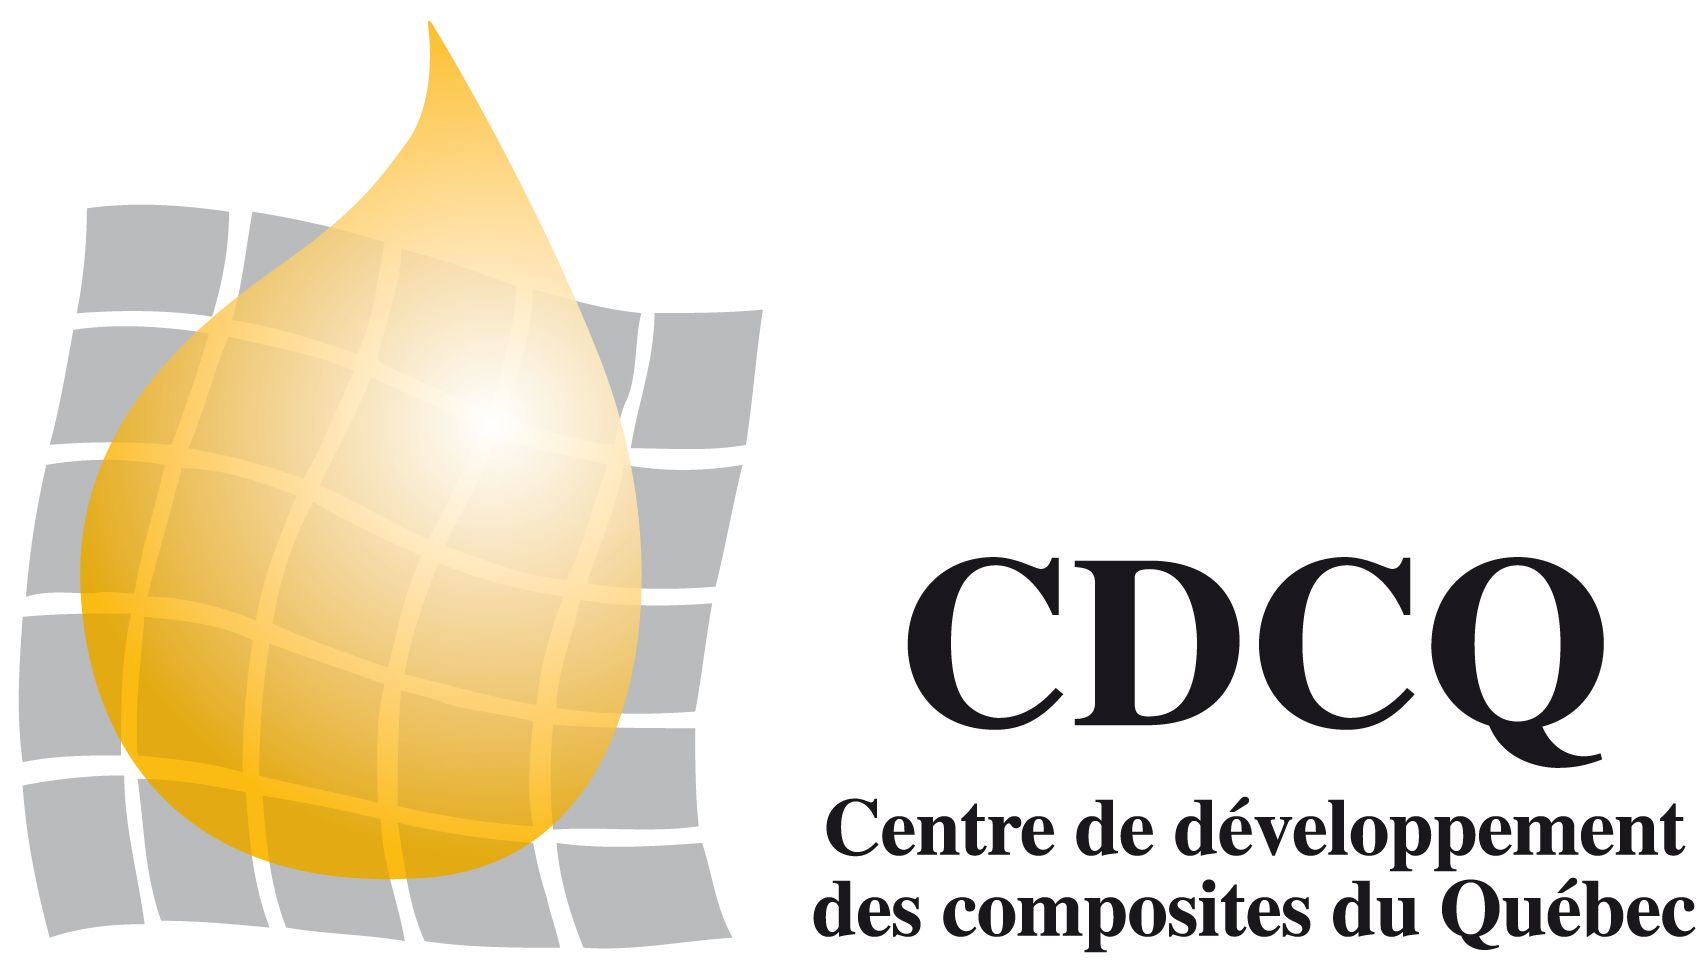 CDCQ - Centre de développement des composites du Québec